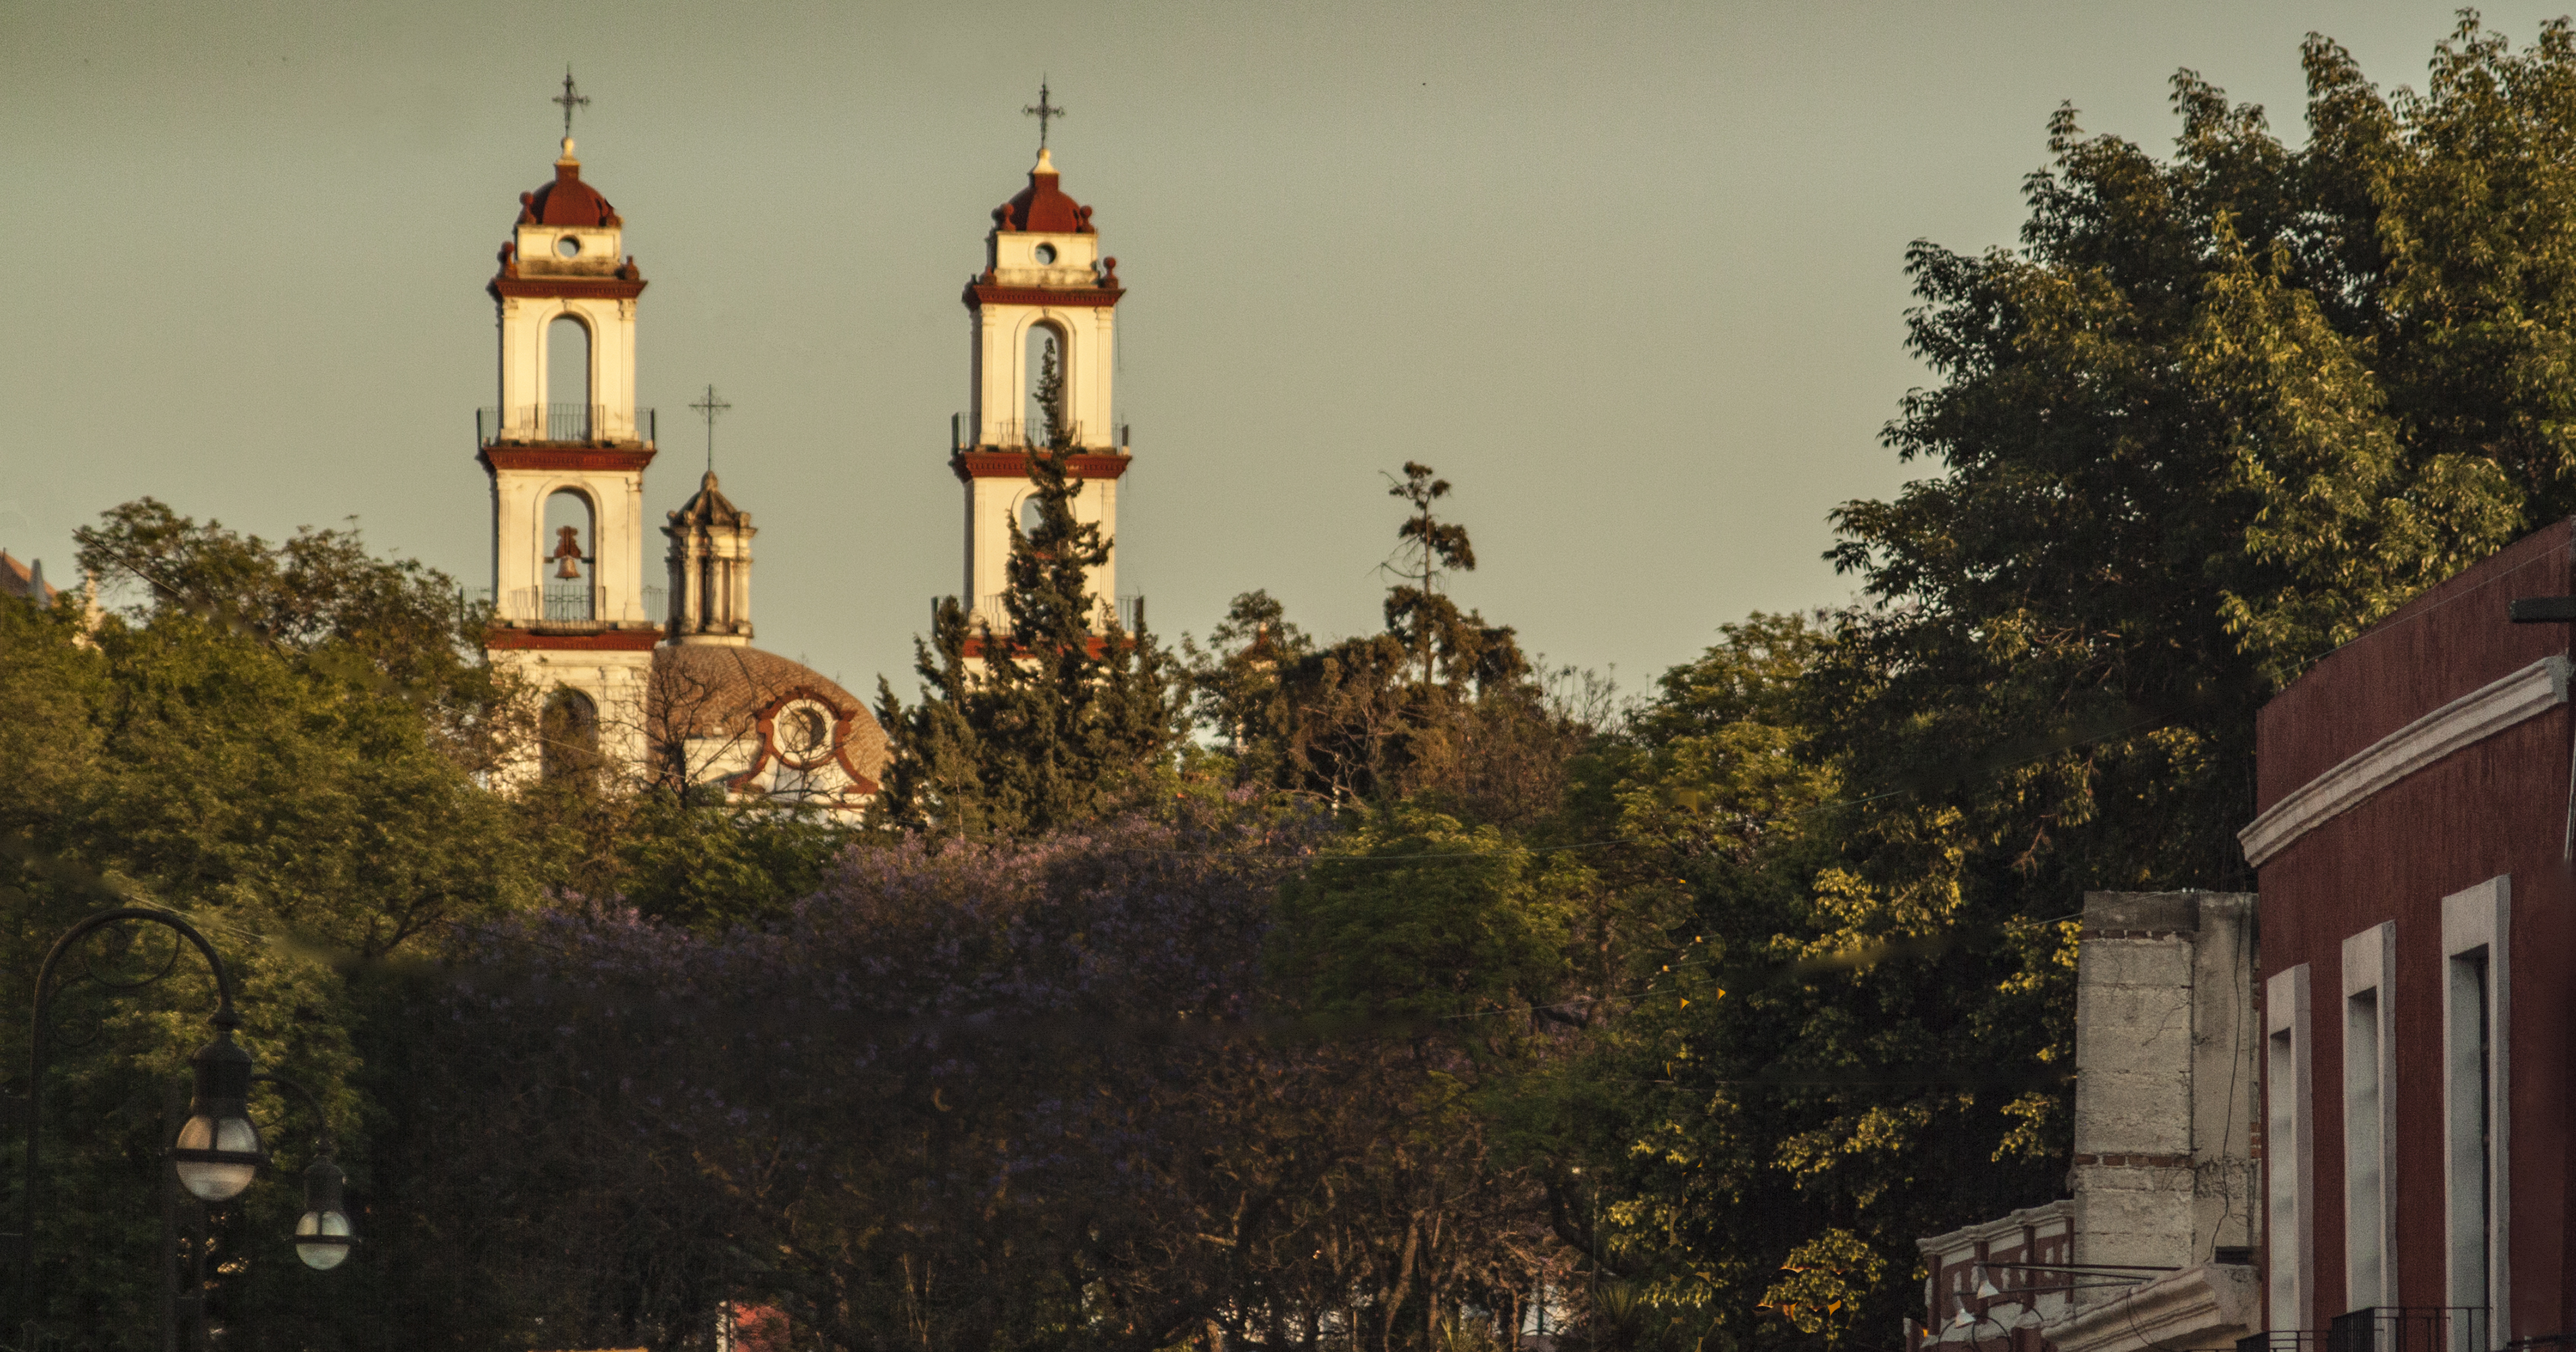 Las torres de la iglesia Puebla, Puebla, México